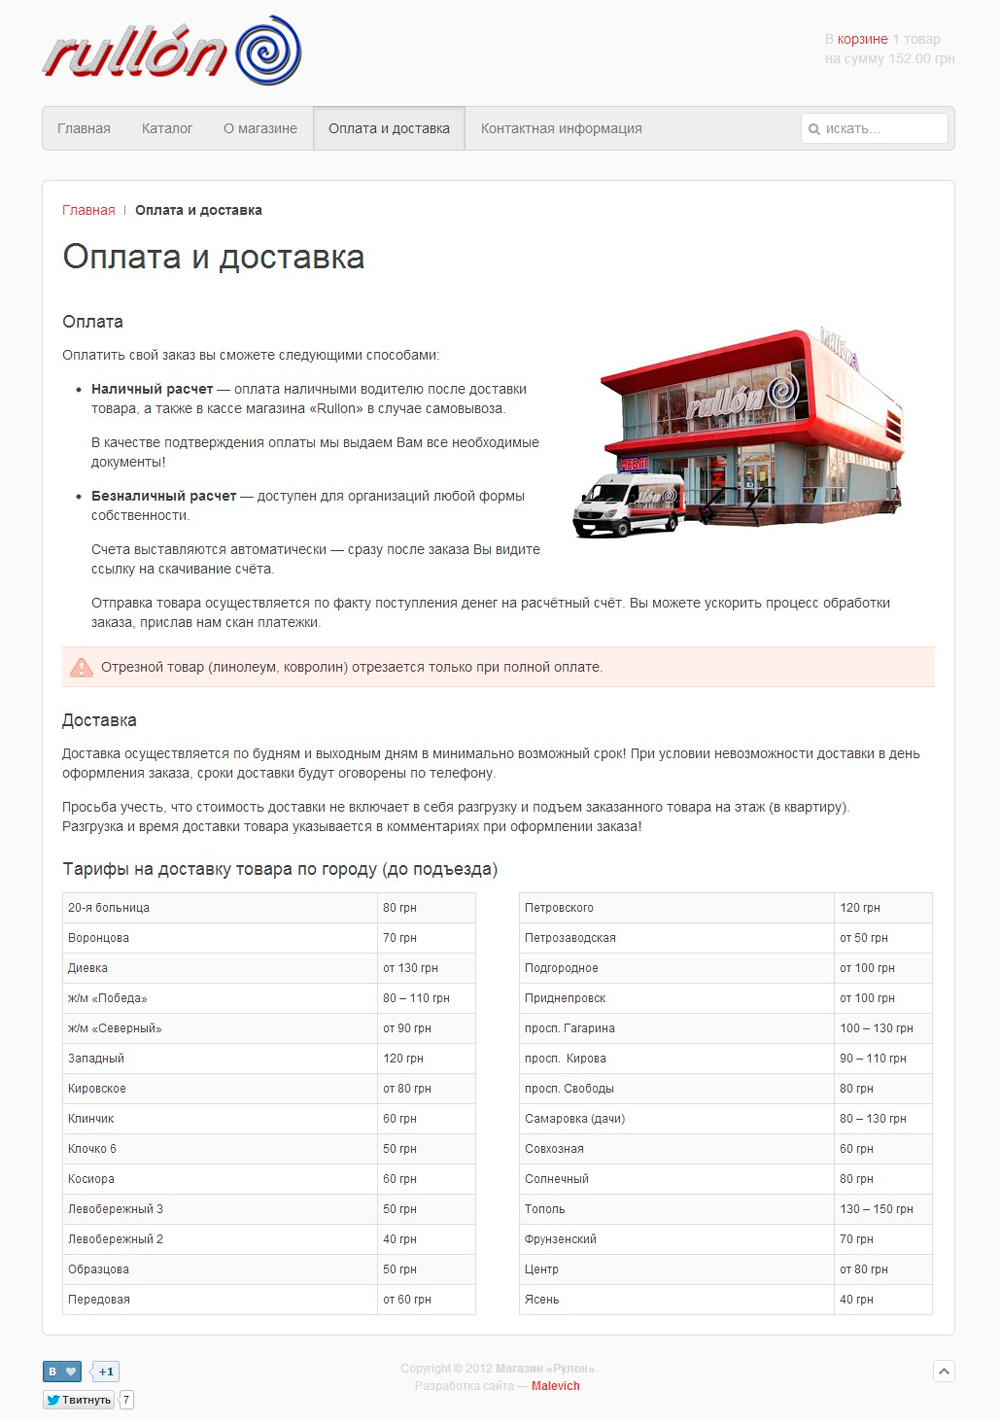 rullon.com.ua